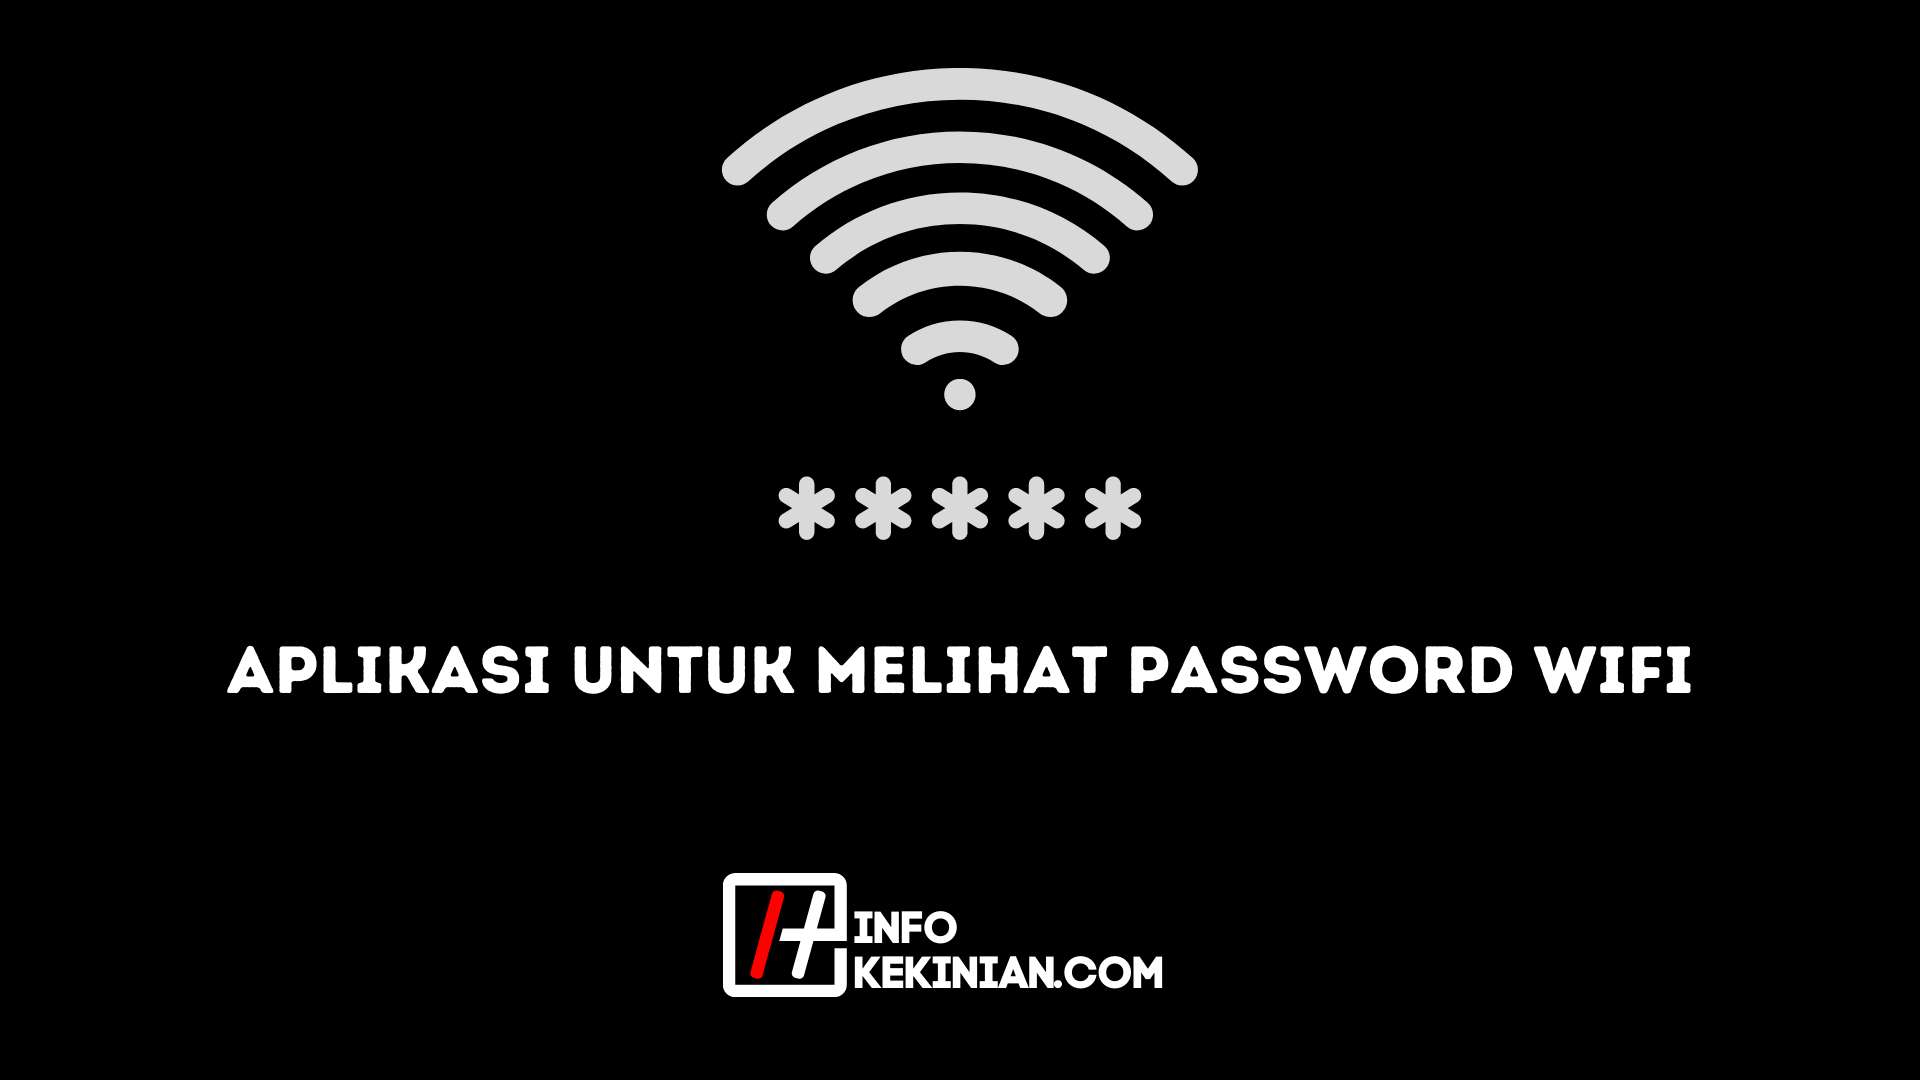 App, um das WLAN-Passwort anzuzeigen